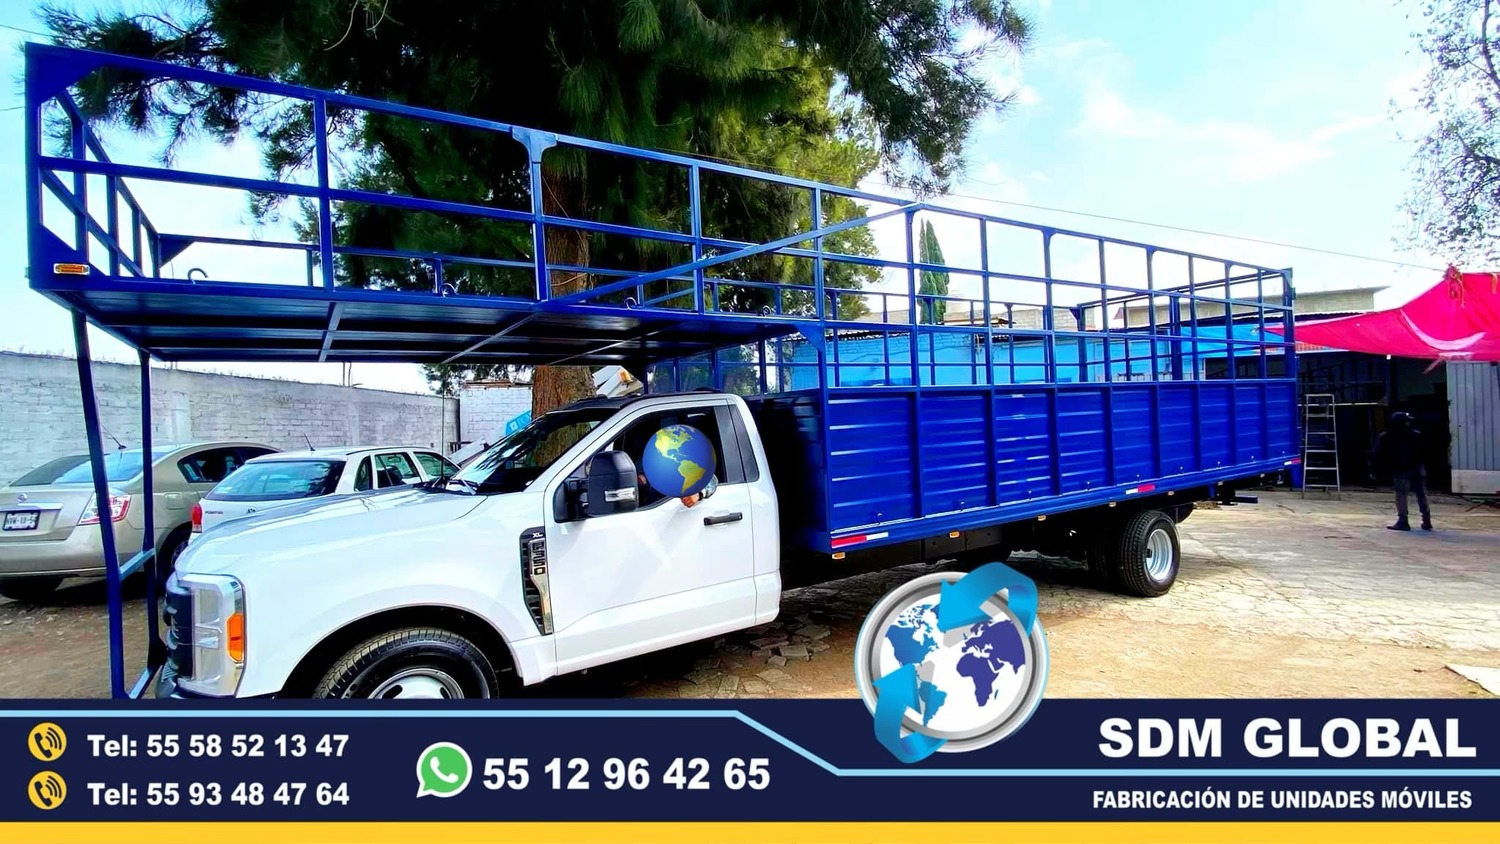 <span style="font-weight: bold;">Servicio de Alargado de chasis de camiones y camionetas </span><br>